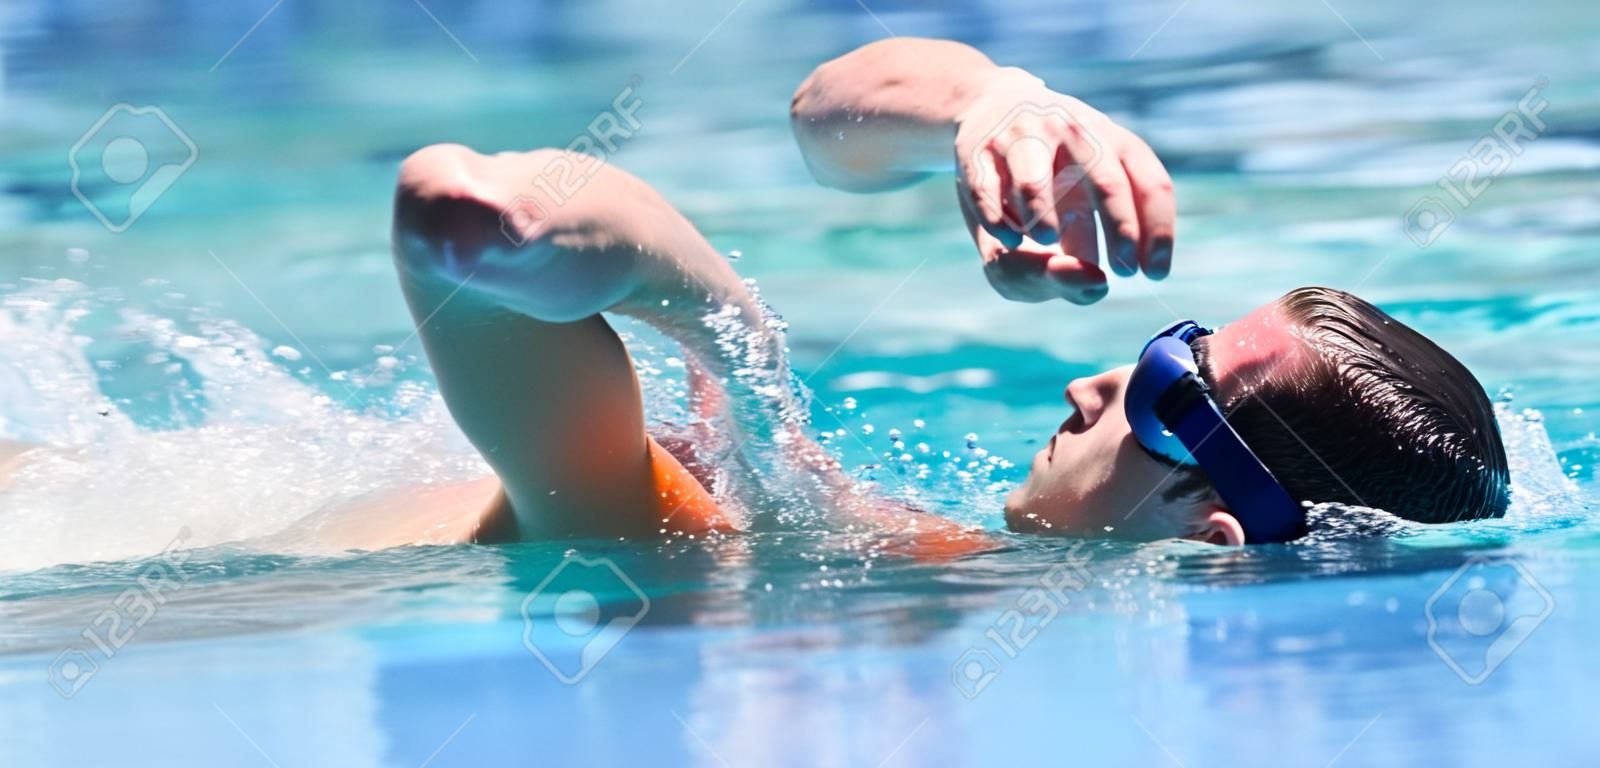 Giovane nuoto il crawl in una piscina